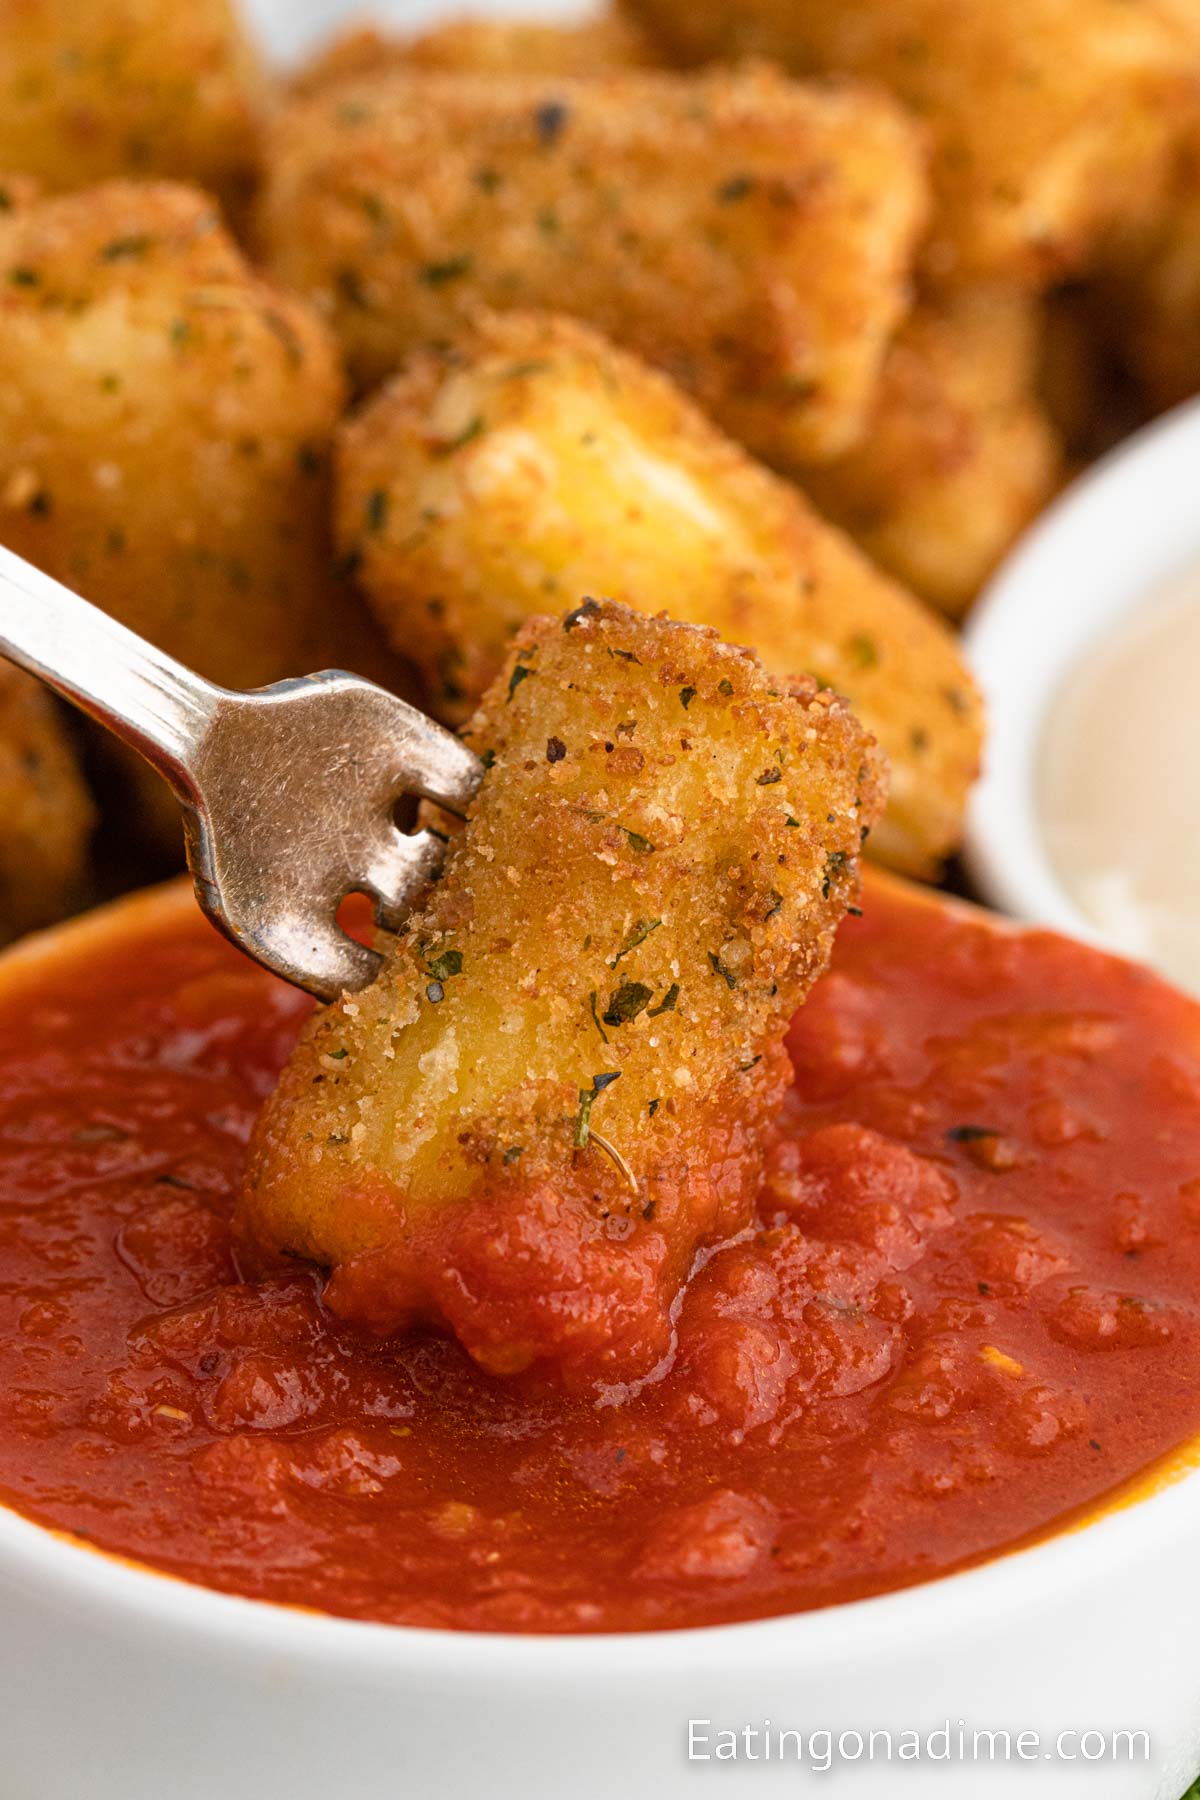 Stuffed Ziti Fritta dipping into a tomato sauce